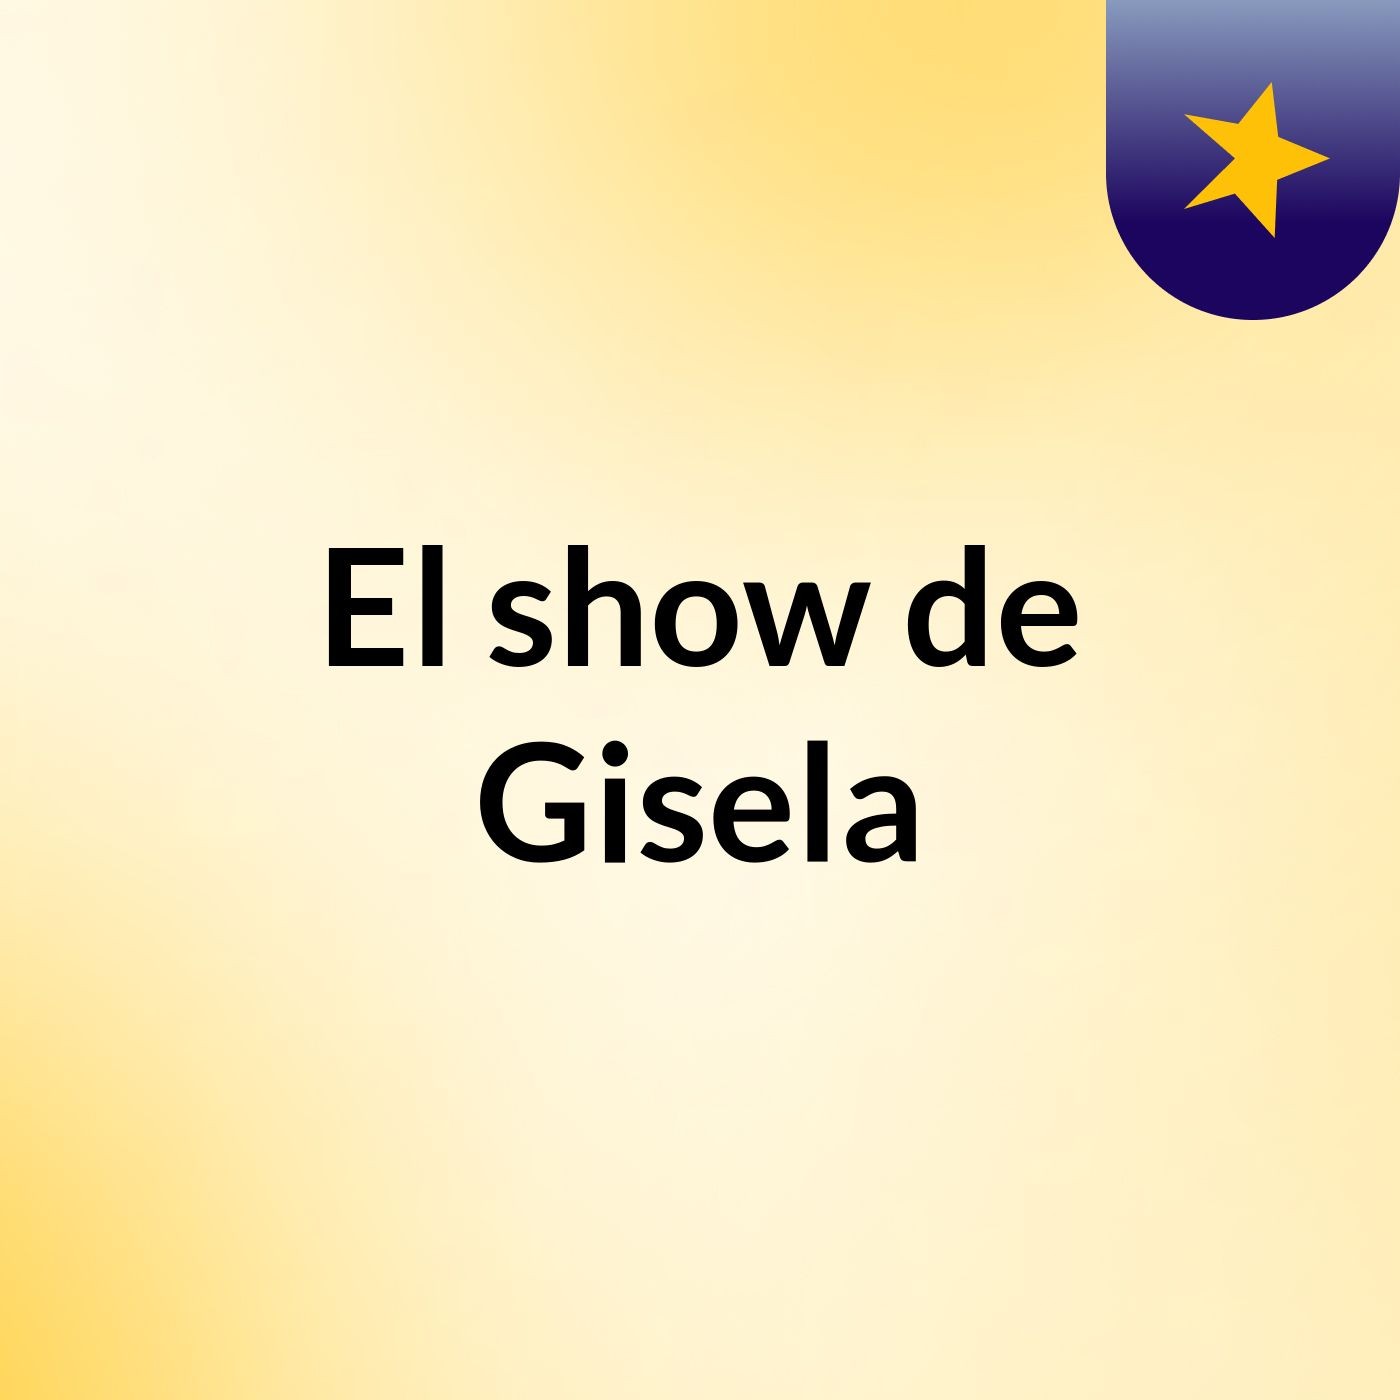 El show de Gisela